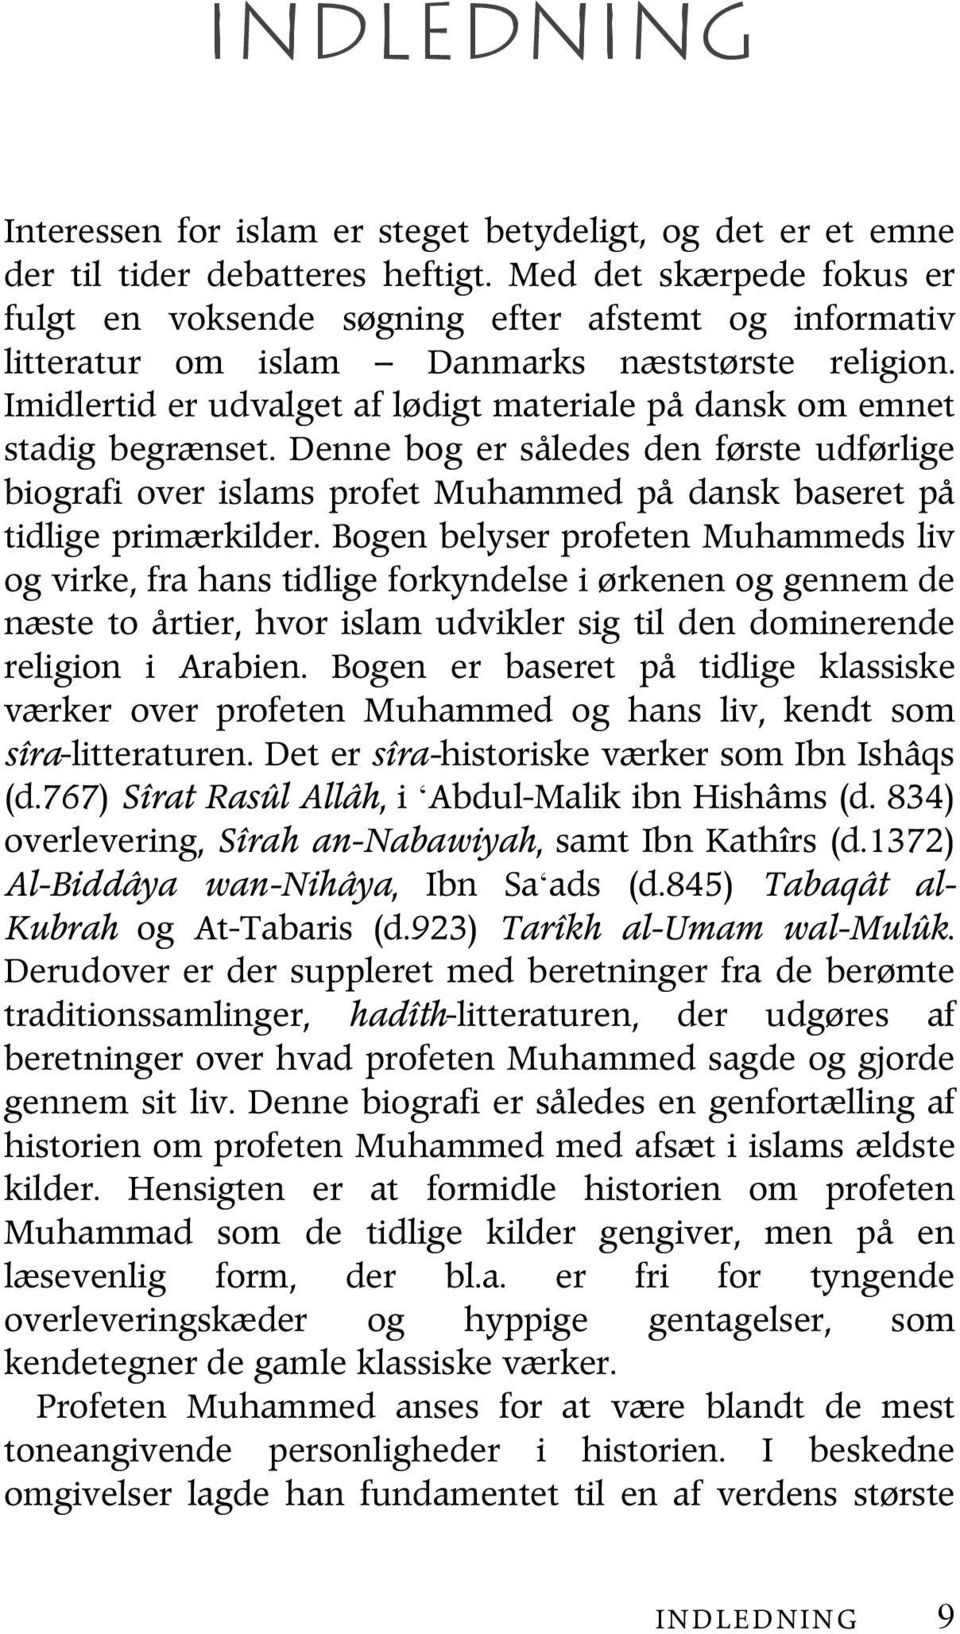 Imidlertid er udvalget af lødigt materiale på dansk om emnet stadig begrænset. Denne bog er således den første udførlige biografi over islams profet Muhammed på dansk baseret på tidlige primærkilder.